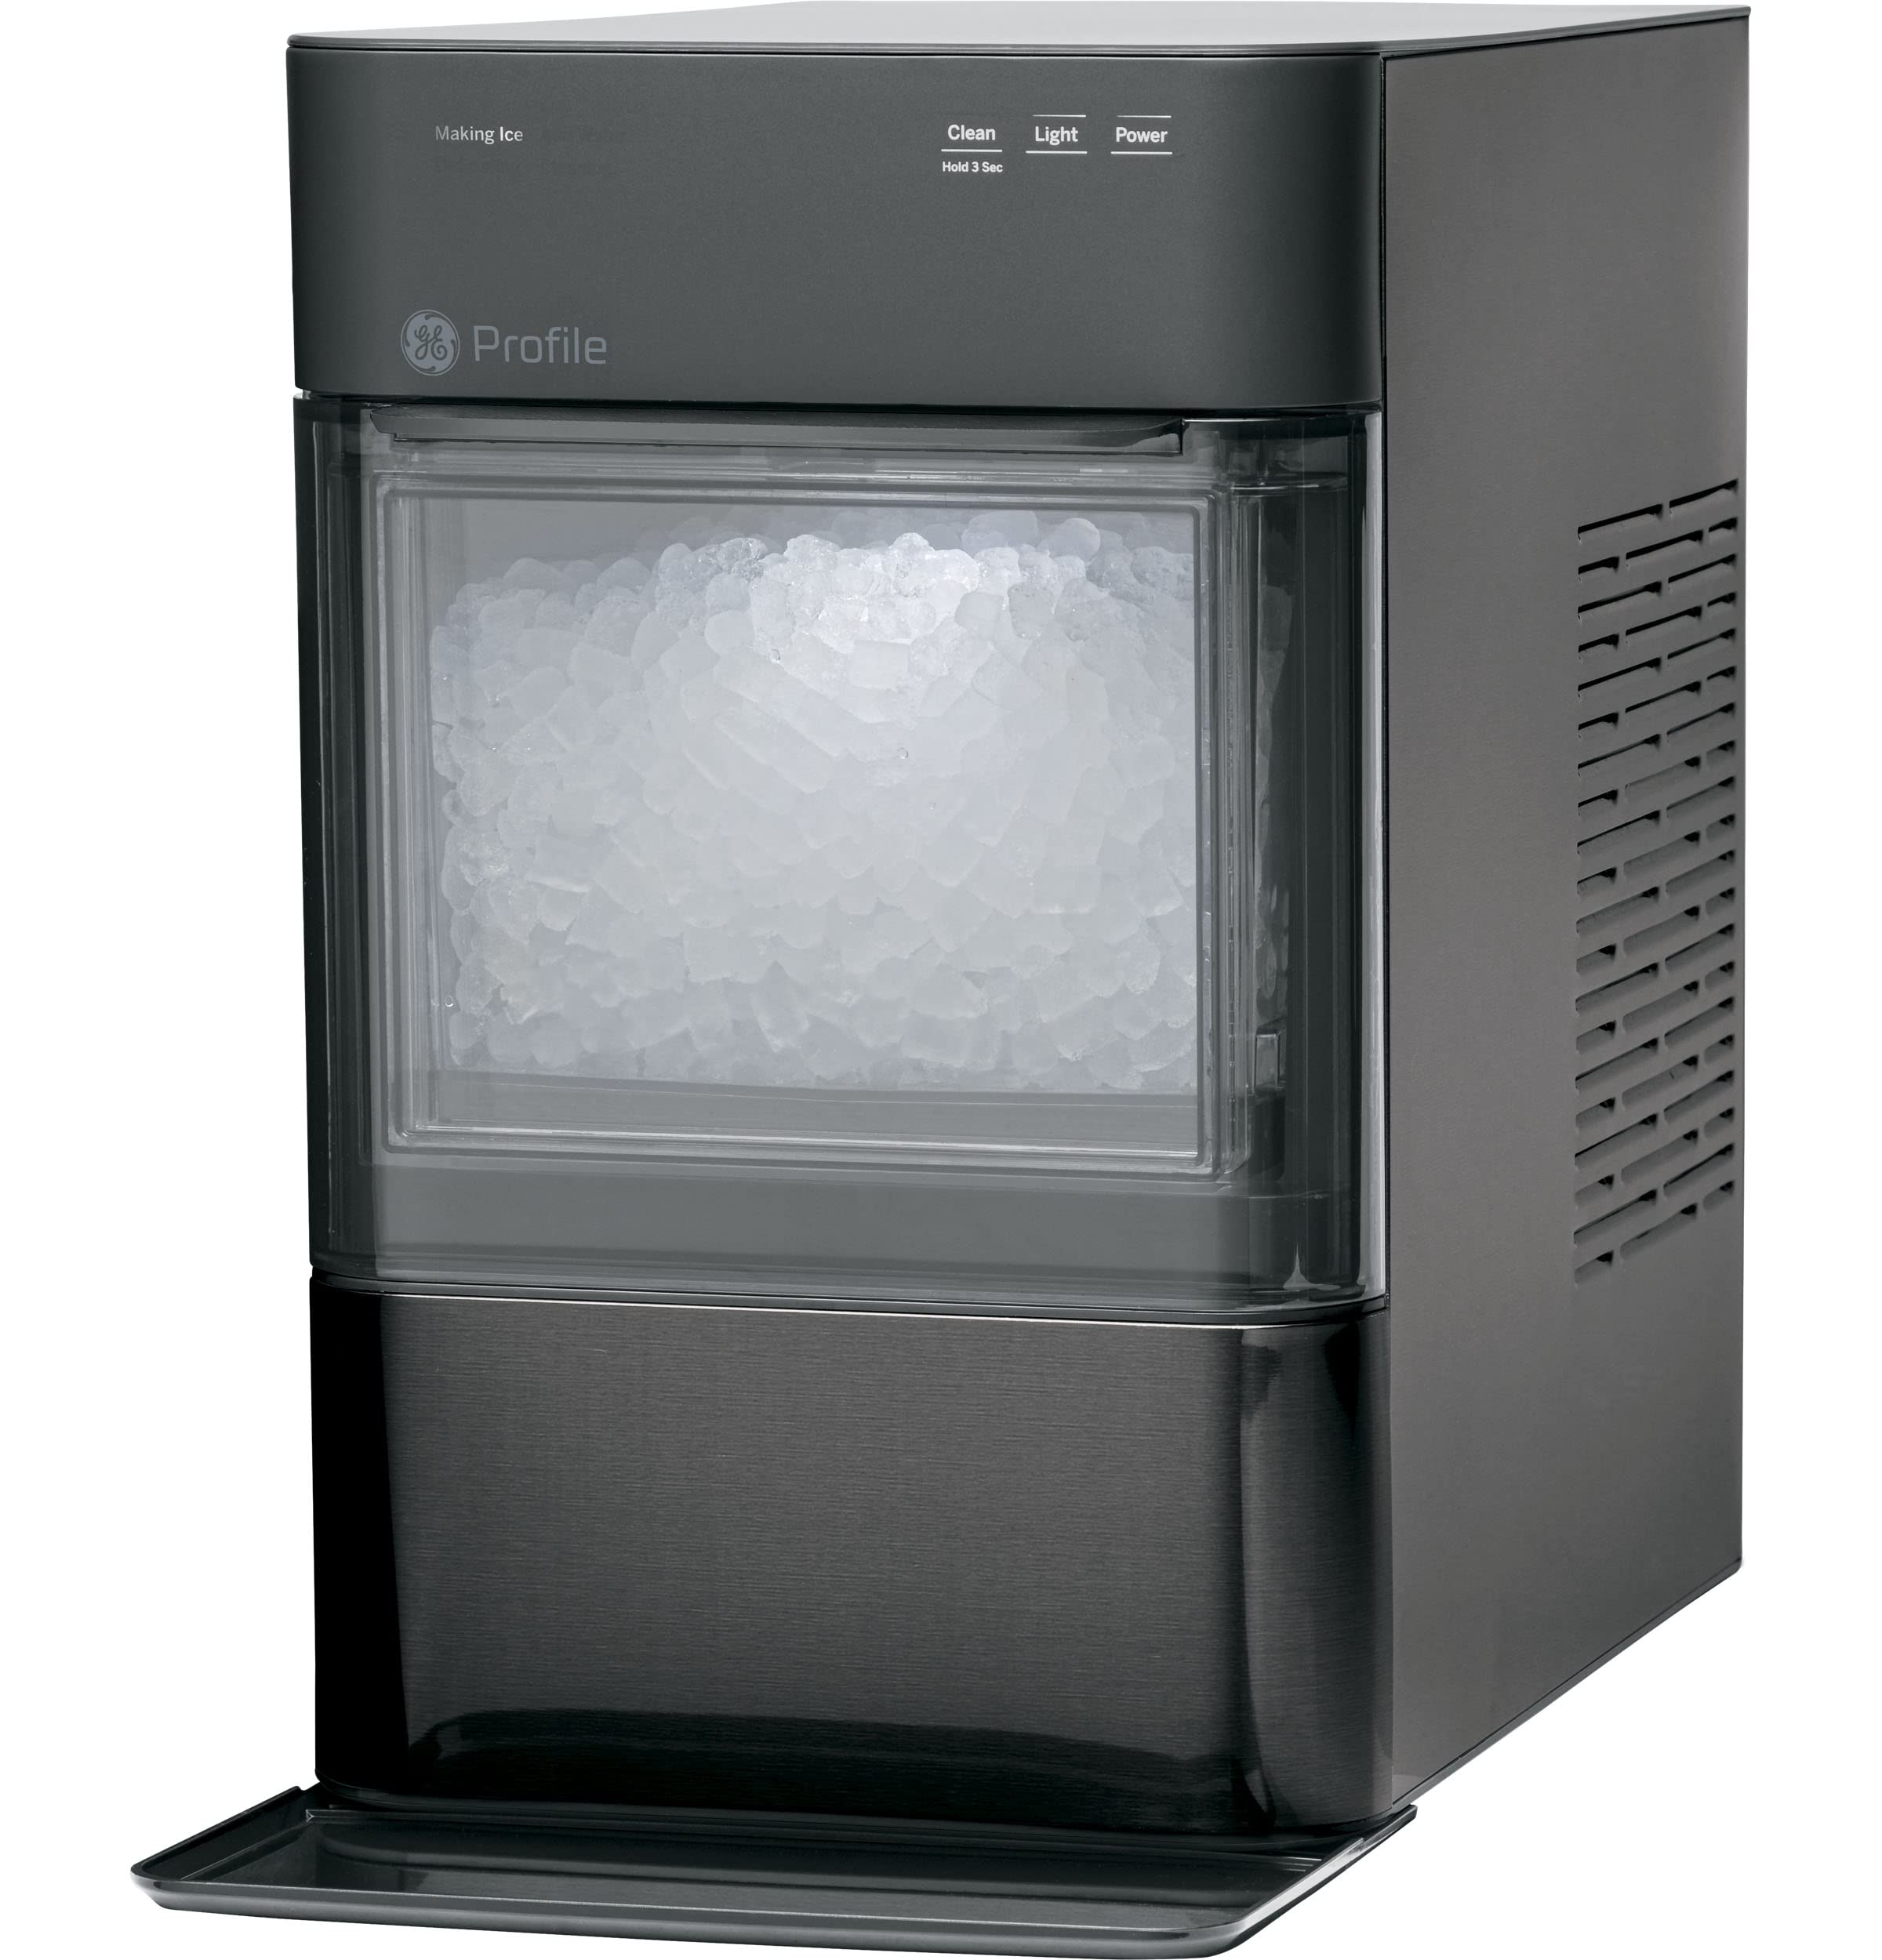 GE 简介蛋白石2.0 |台面 Nugt 制冰机 |带 WiFi 连接的制冰机 |智能家居厨房必备品 |黑色不锈钢